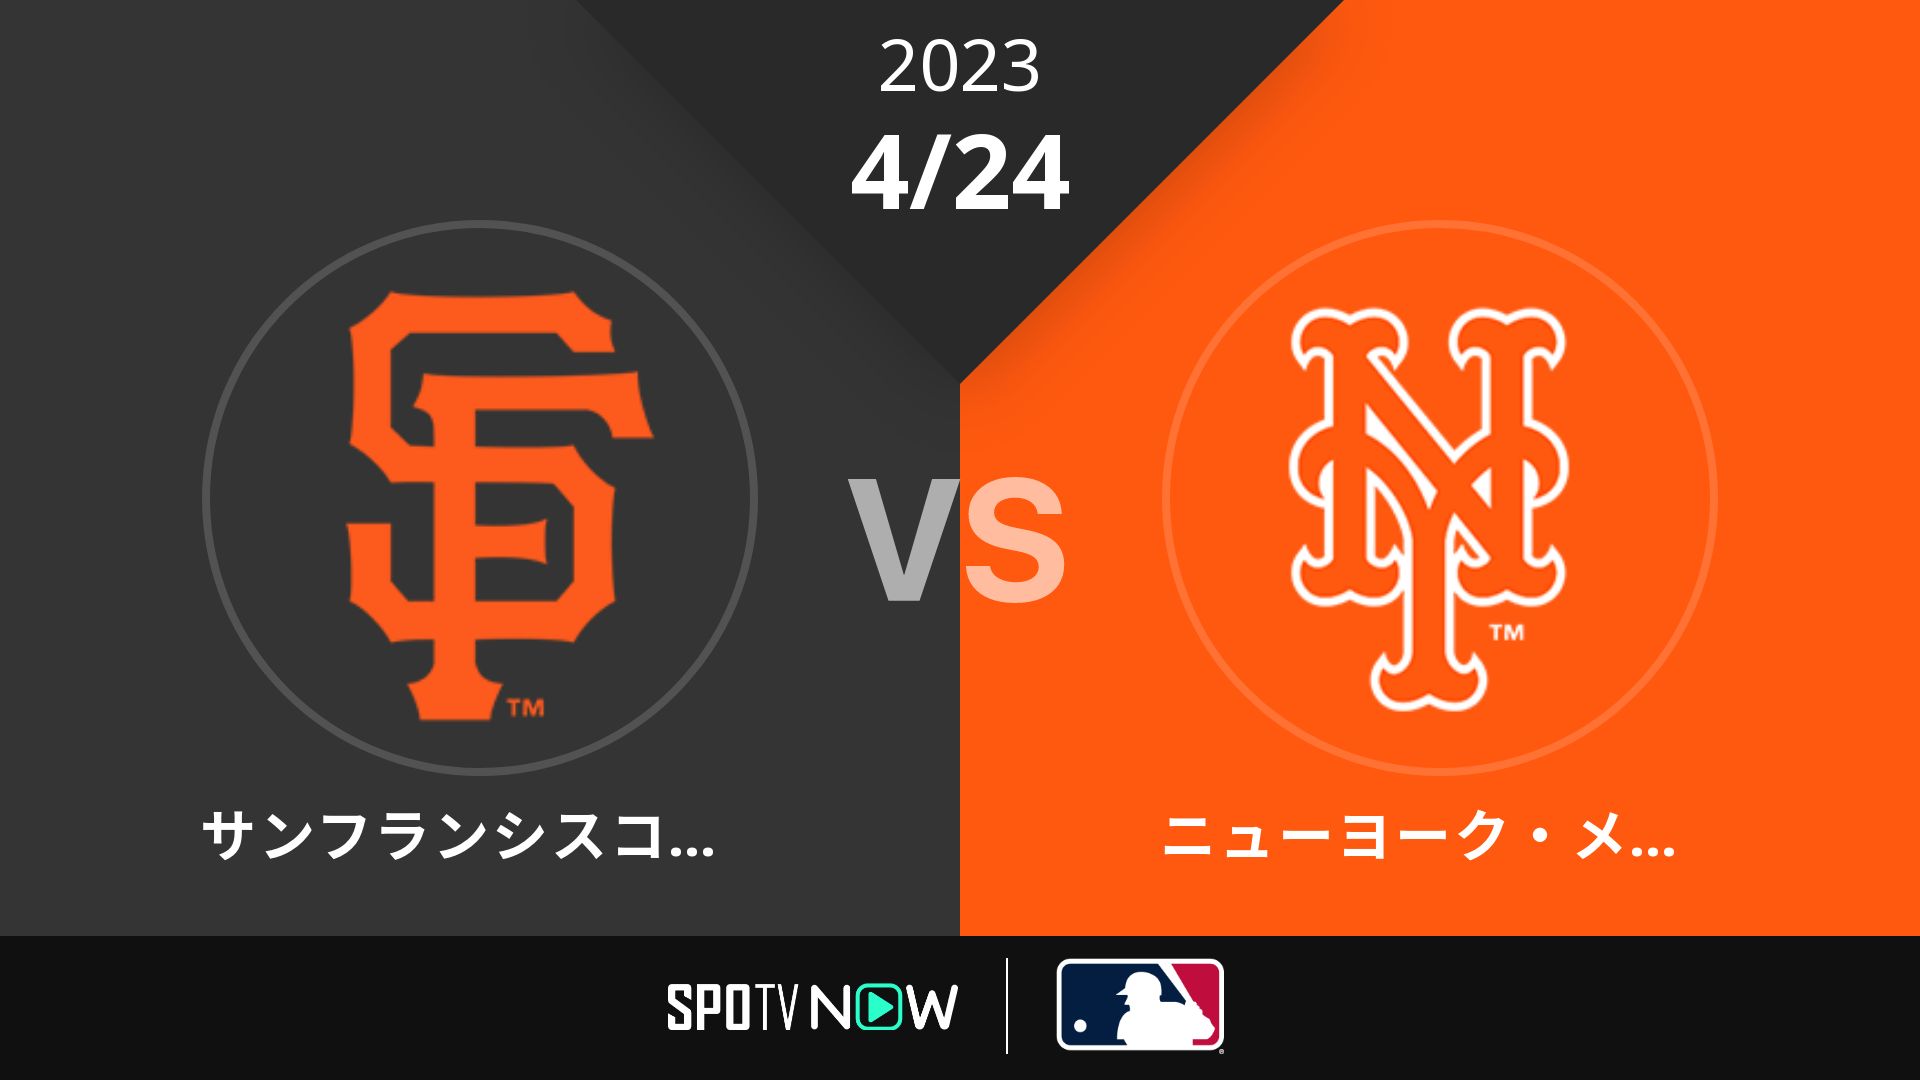 2023/4/24 ジャイアンツ vs メッツ [MLB]